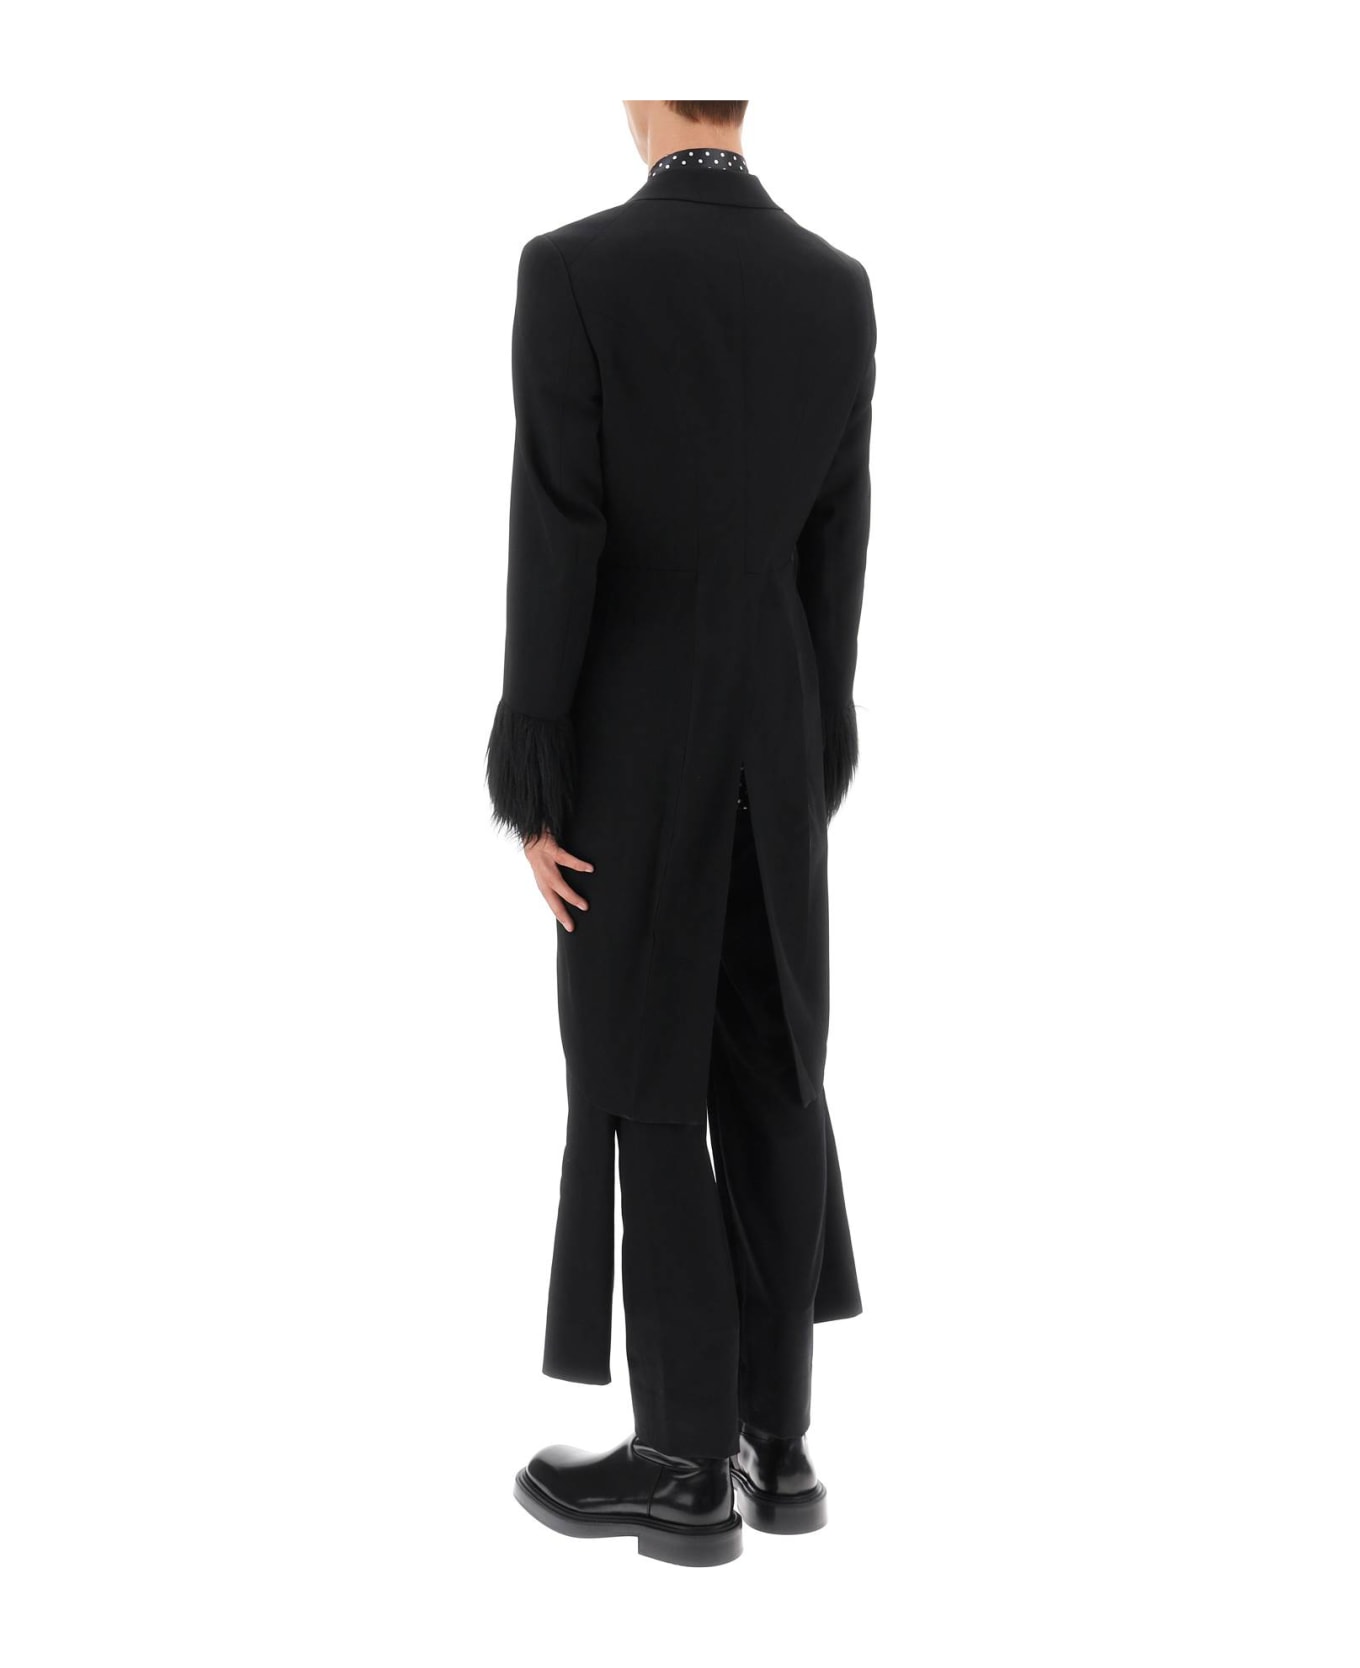 Comme Des Garçons Homme Plus Tailcoat With Eco-fur Inserts - BLACK BLACK (Black)